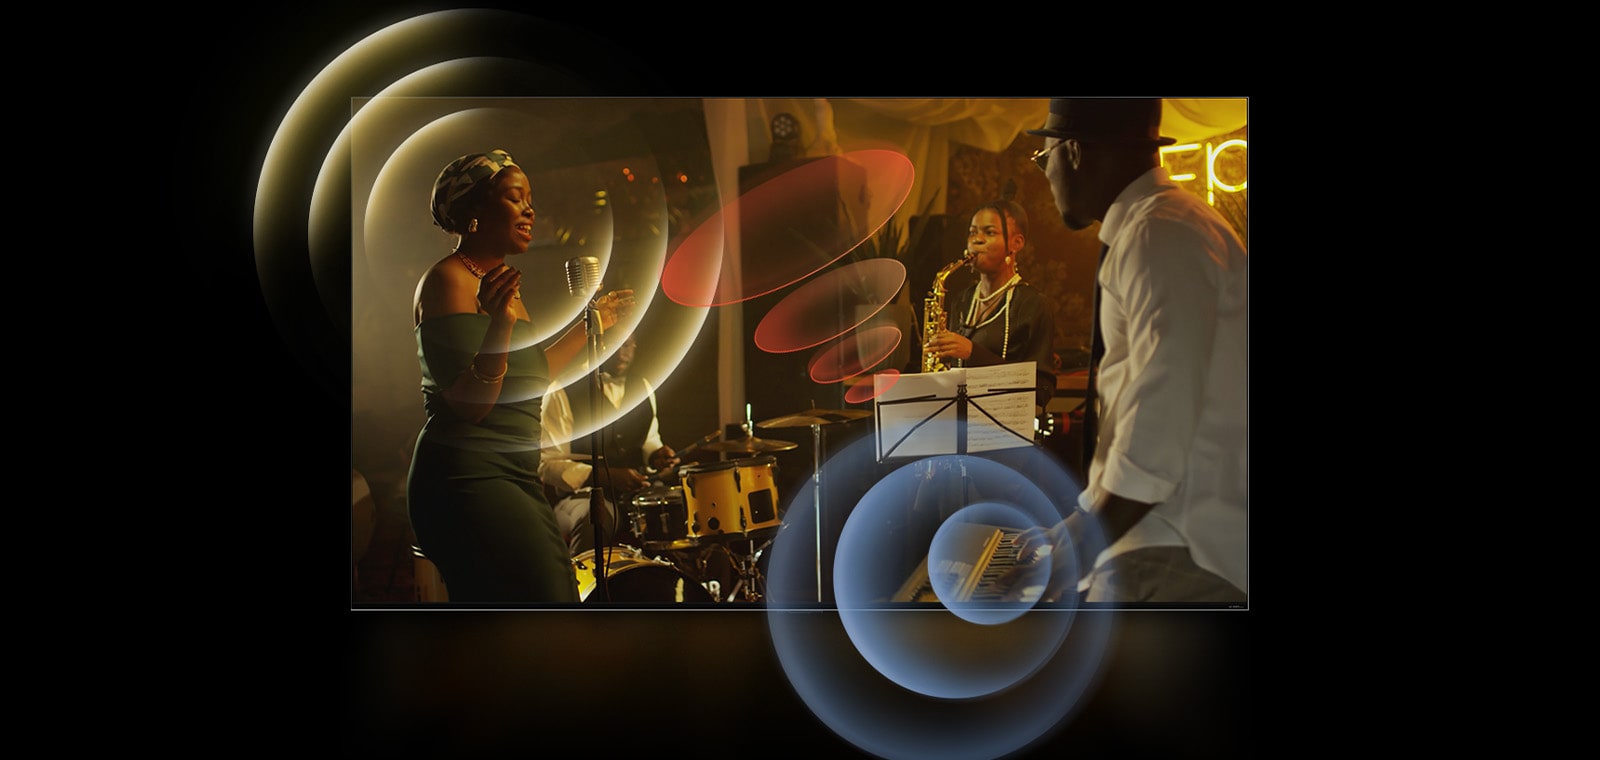 На экране телевизора LG TV демонстрируется выступление музыкантов с яркой круговой графикой вокруг пространства.